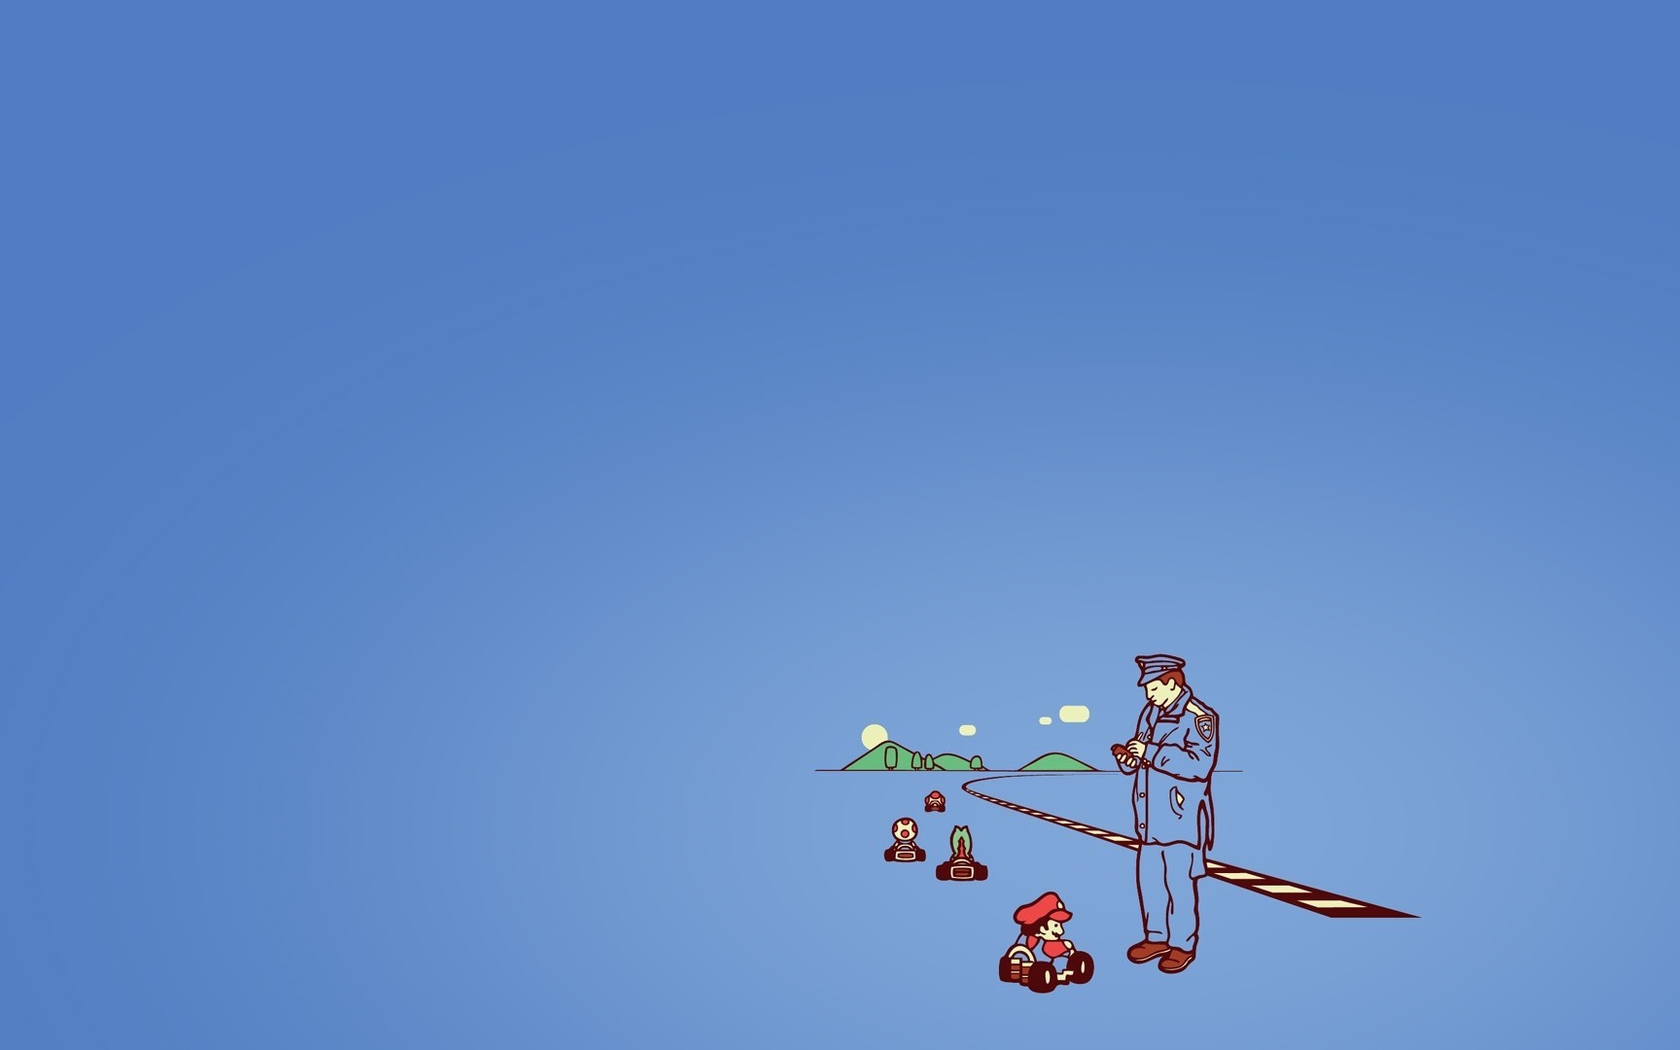 Картинка: Синий фон, картинг, Марио, полиция, трасса